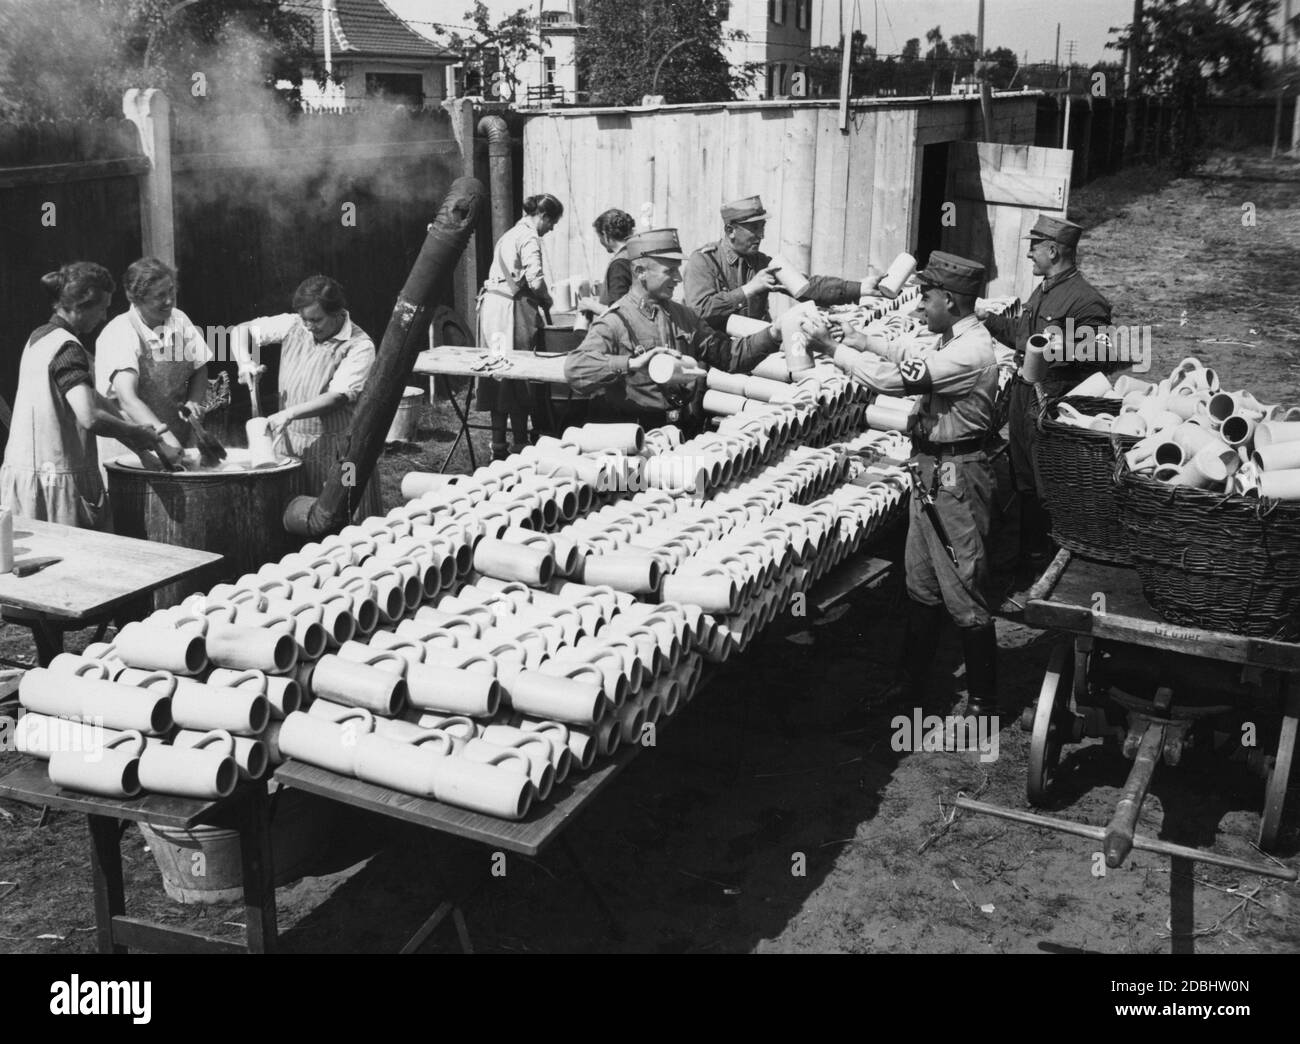 Le donne risciacquano le tazze in grandi botti, mentre gli uomini della SA in uniforme trasportano le tazze ai luoghi di dispiegamento con l'aiuto di un carrello, in modo che i partecipanti del Congresso del Partito nazista a Norimberga non soffrono di sete. Foto Stock